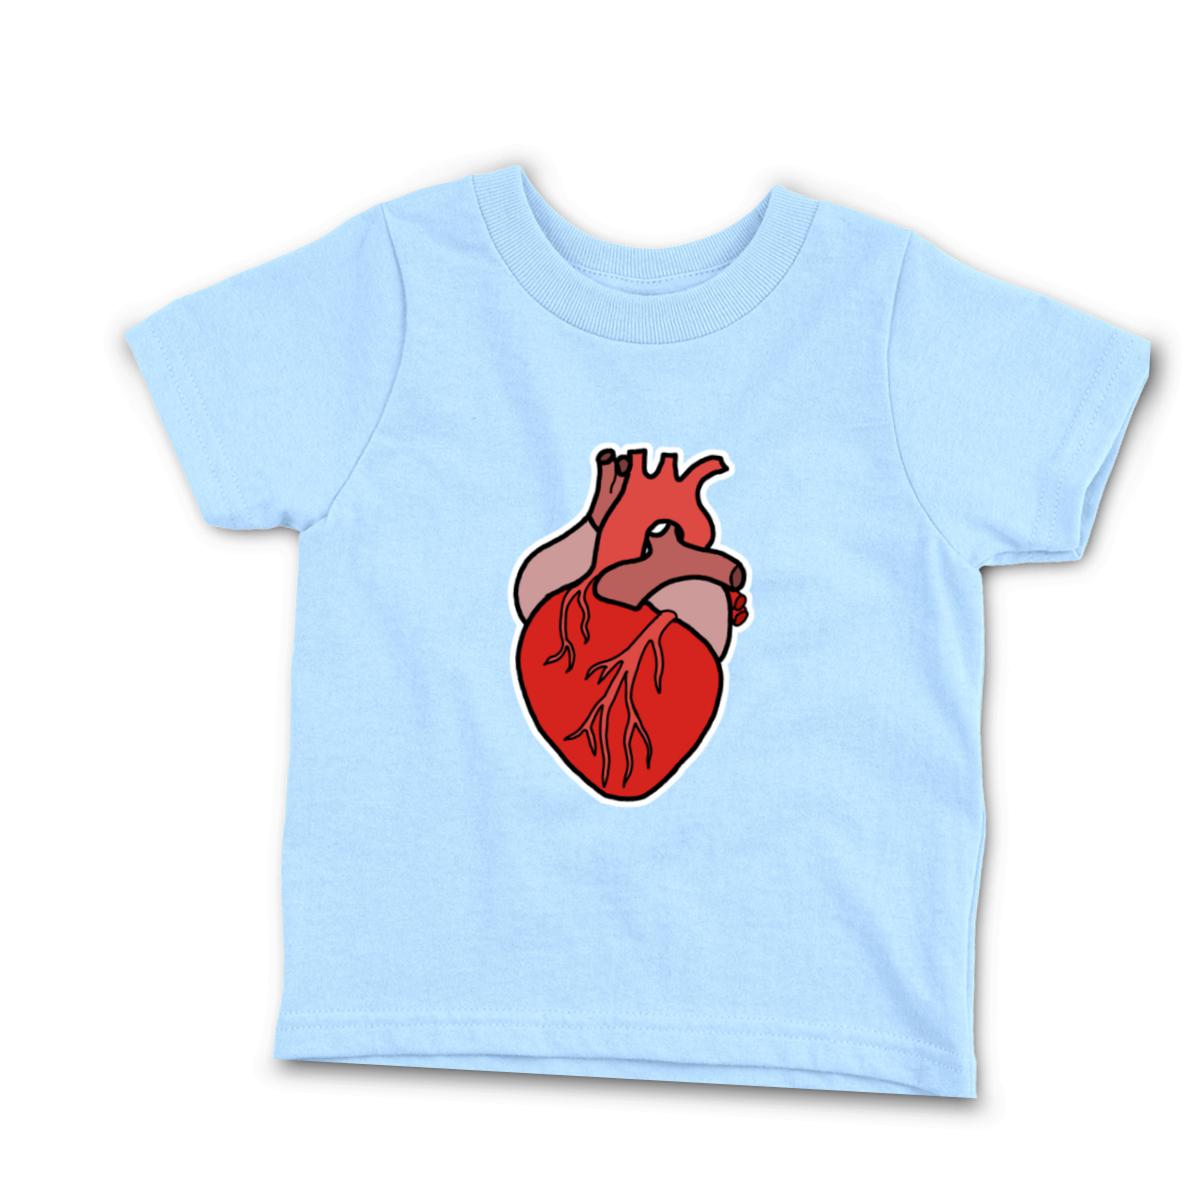 Illustrative Heart Infant Tee 12M light-blue